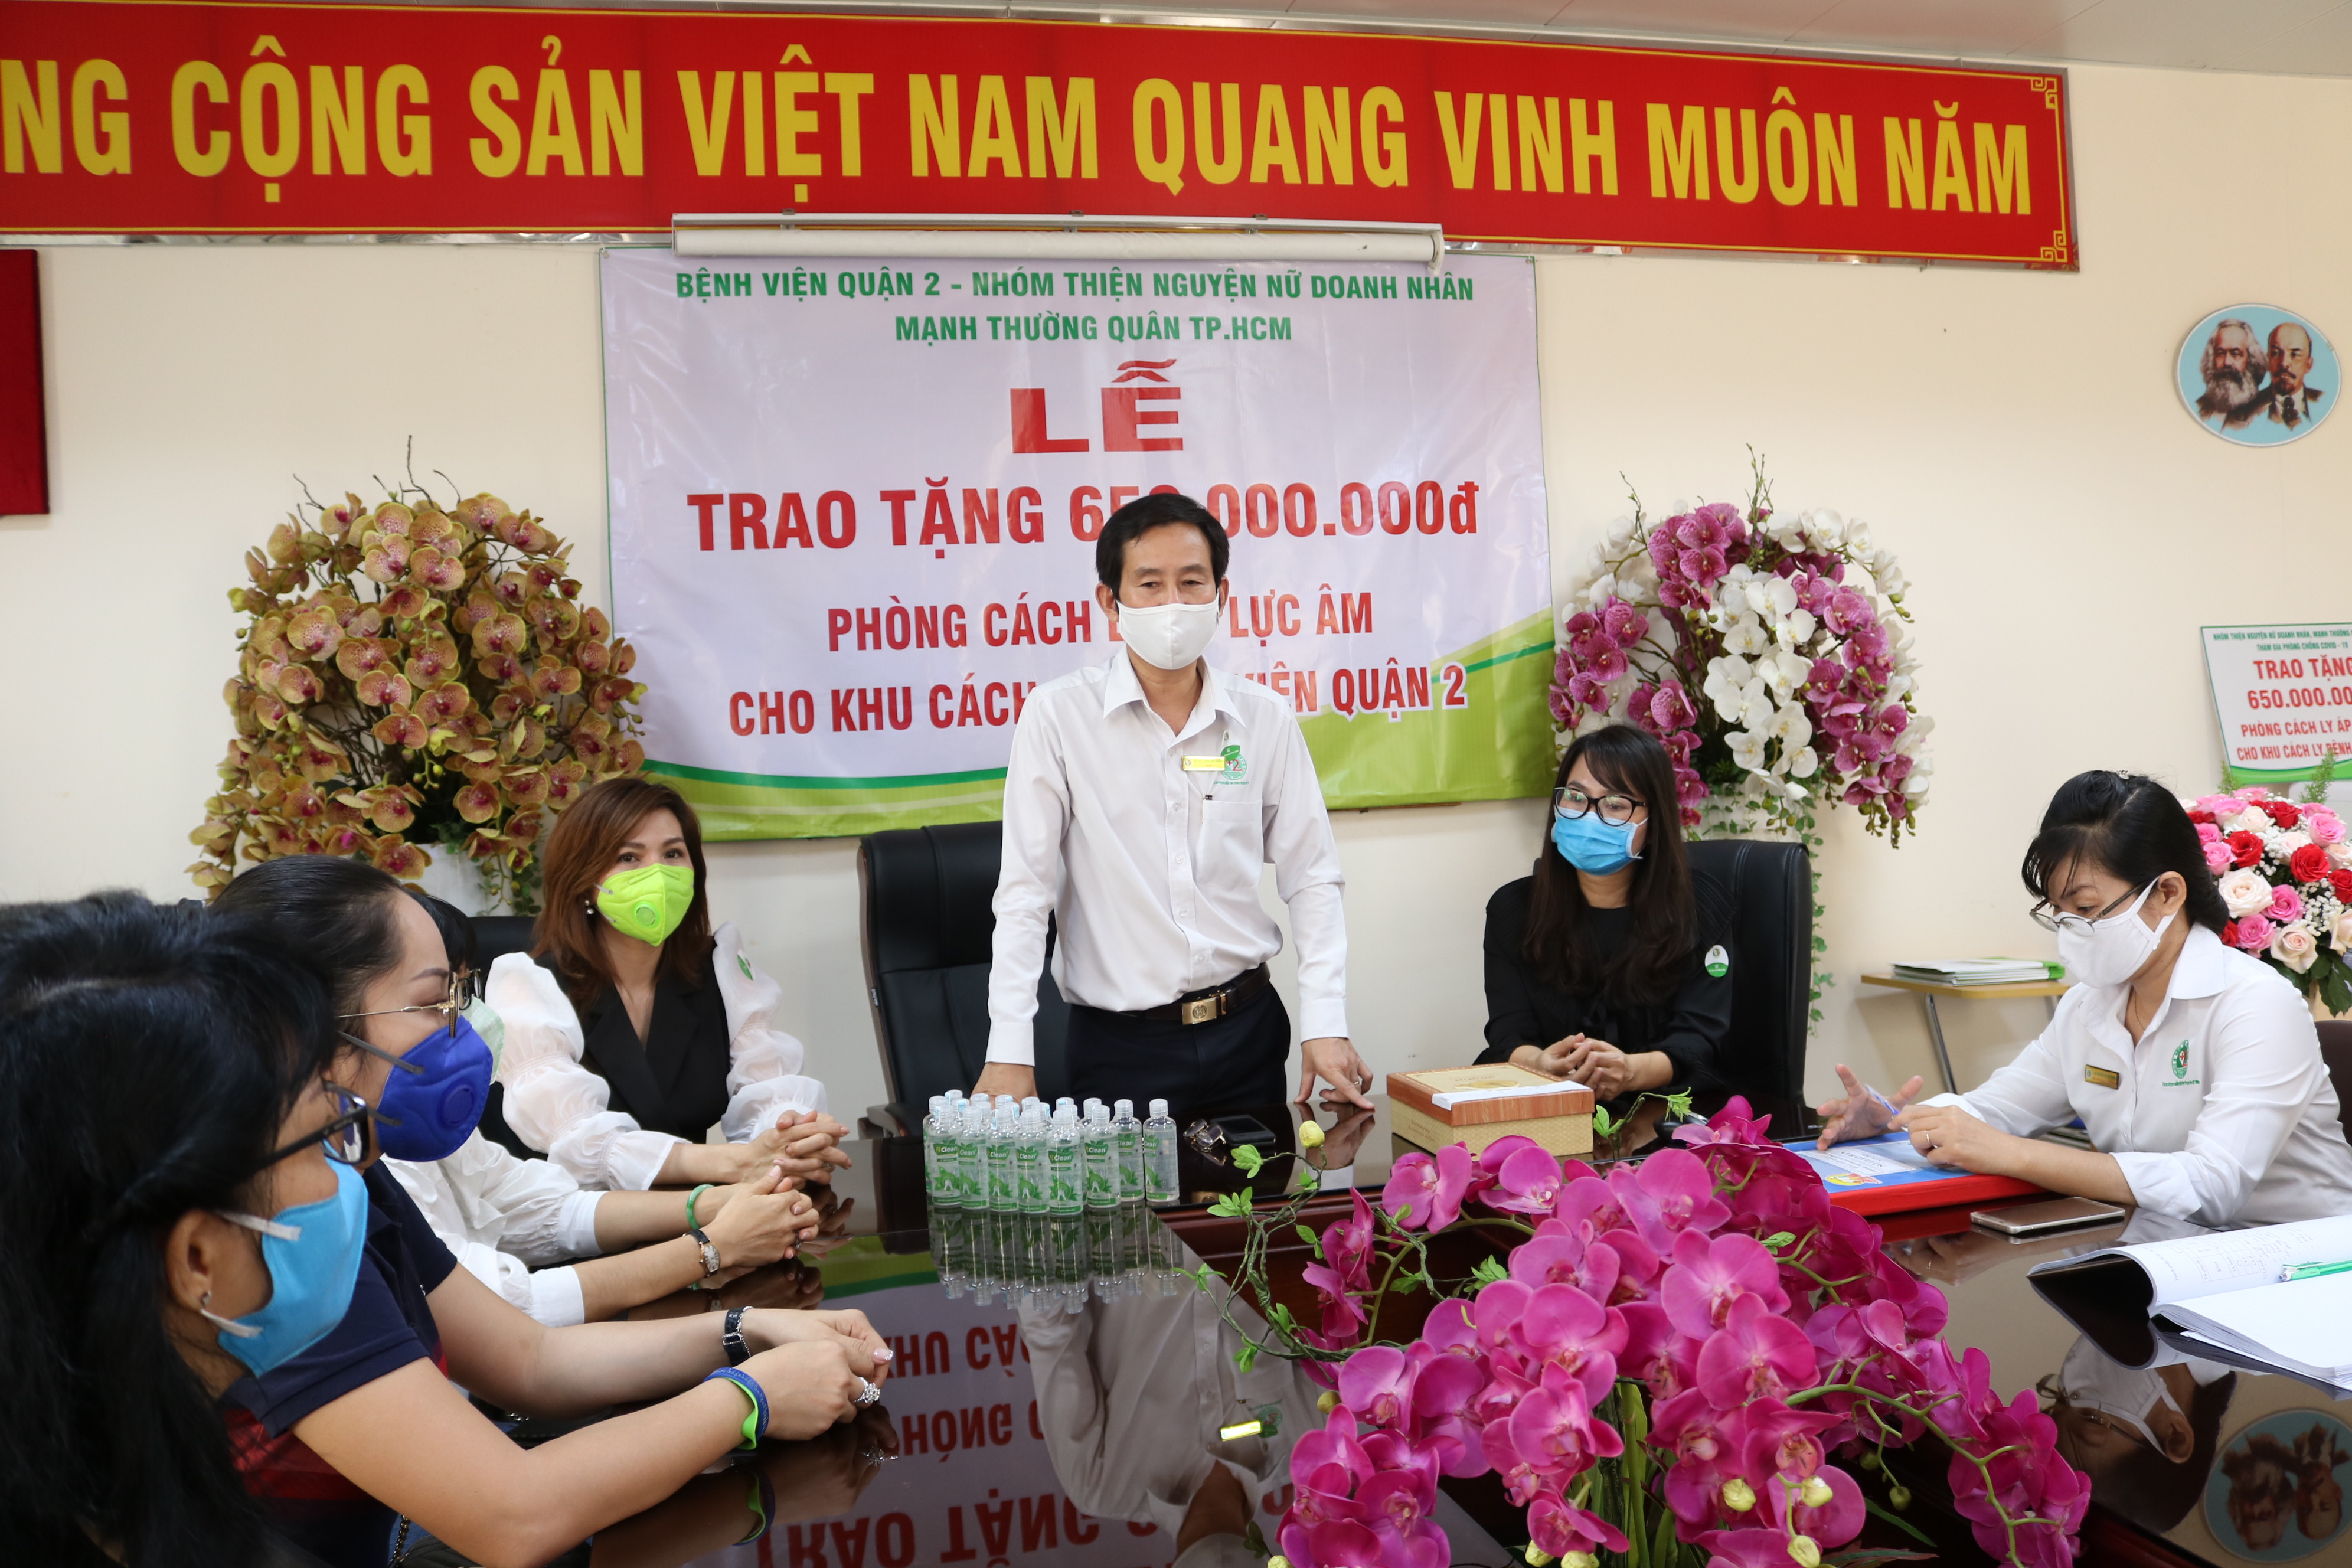 Bác sĩ Trần Văn Khanh, giám đốc Bệnh viện quận 2 bày tỏ cảm kích trước nghĩa cử của các chị và chia sẻ về quy trình lắp đặt phòng cách ly áp lực âm. 